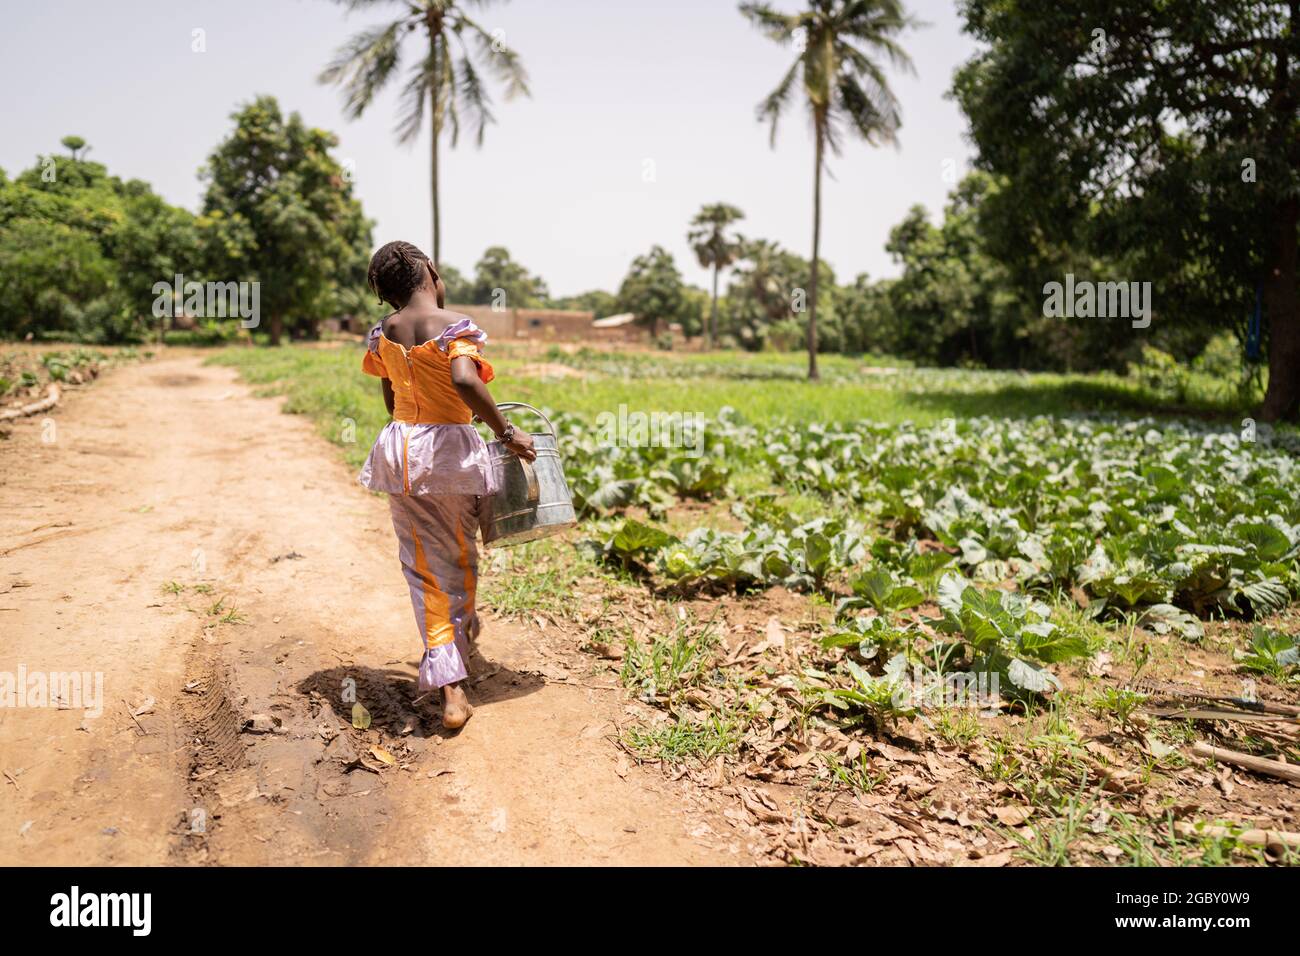 Piccola ragazza africana nera lotta per portare una lattina di irrigazione pesante dal pozzo al campo; concetto di lavoro infantile Foto Stock